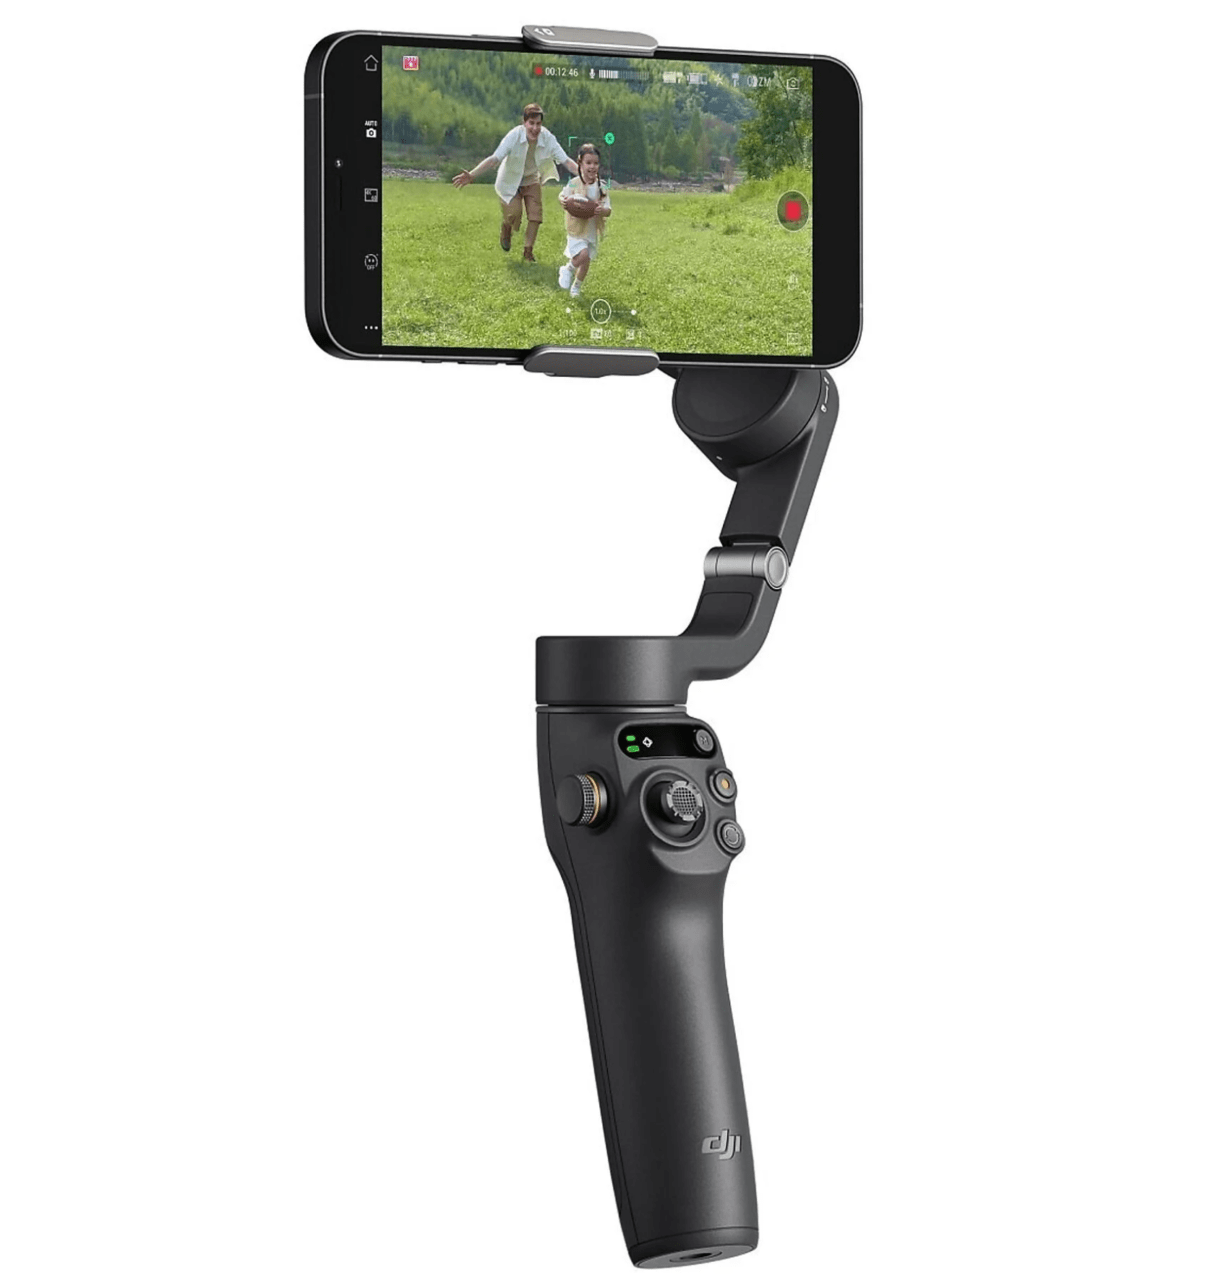 Stabilizator kamery z przymocowanym smartfonem, na ekranie smartfona wyświetlony obraz przedstawiający dorosłego i dziecko biegnące po trawiastej łące.